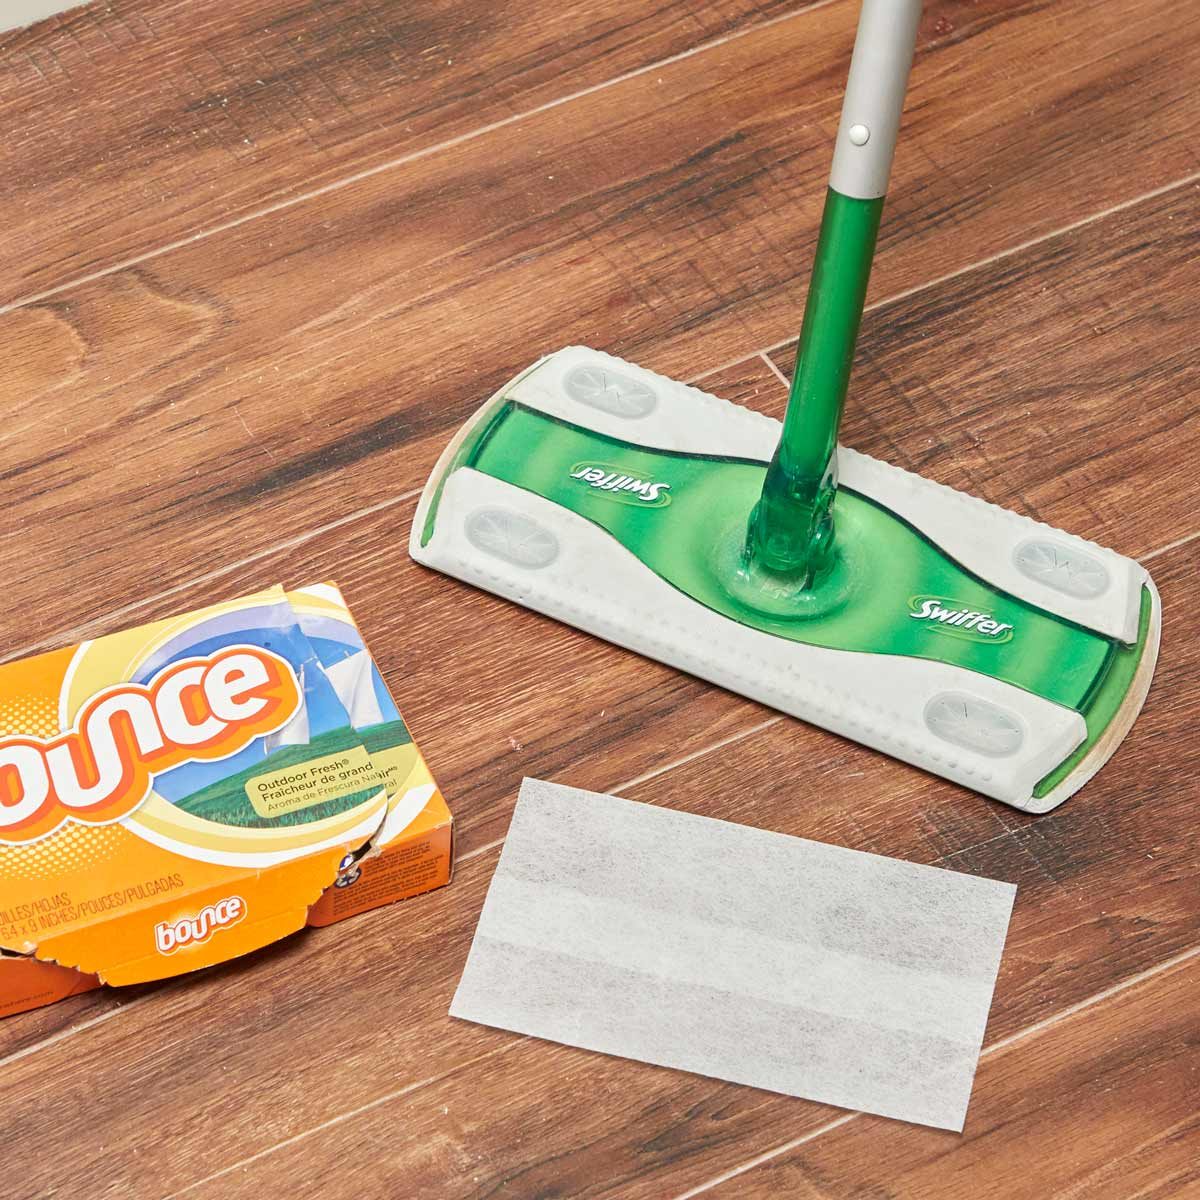 HH Handy hint swiffer floor sweeper dryer sheets